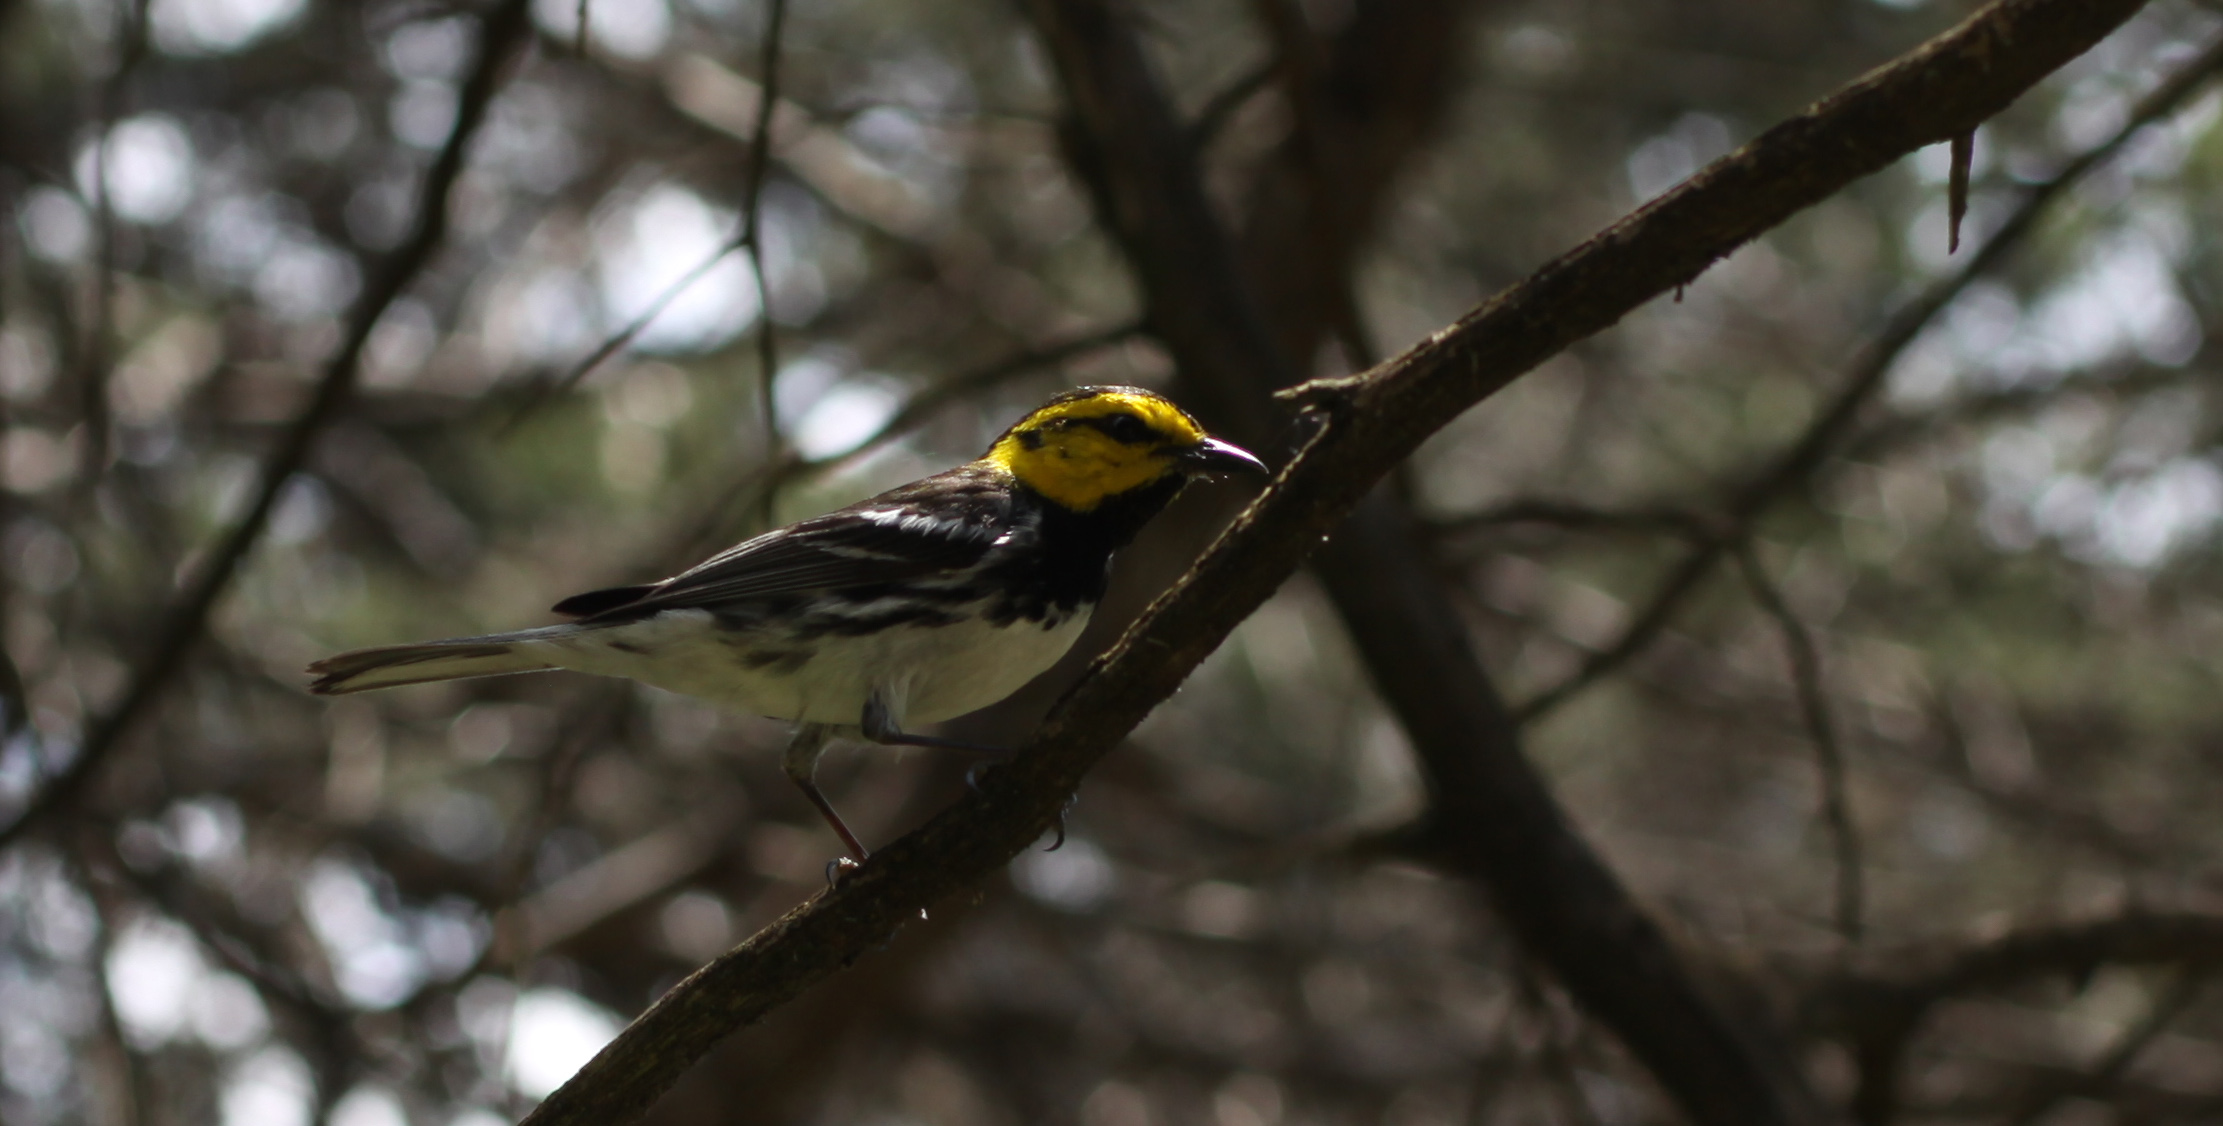 Golden-cheeked Warbler